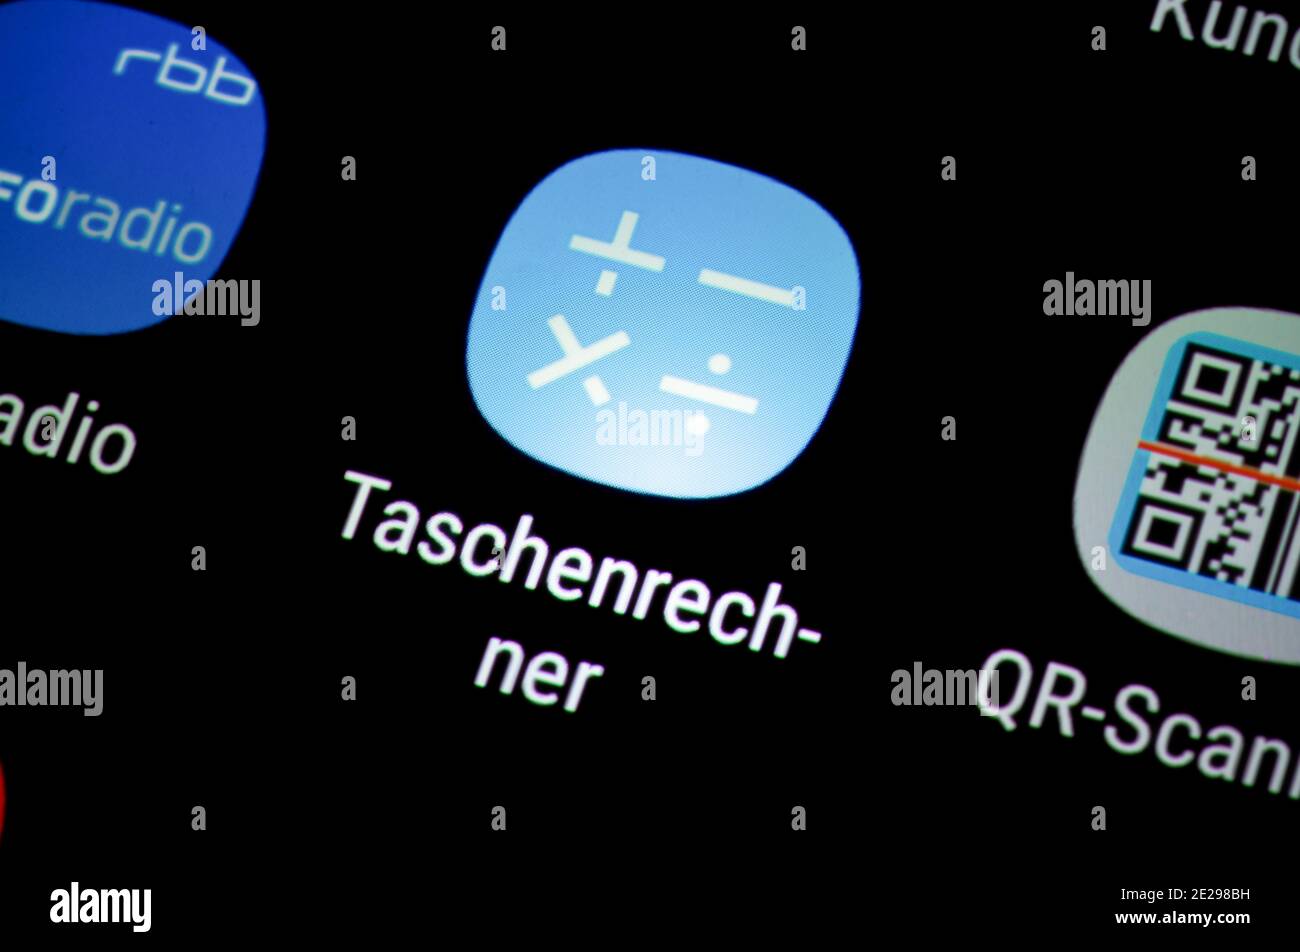 Smartphone, Display, App, Taschenrechner Stock Photo